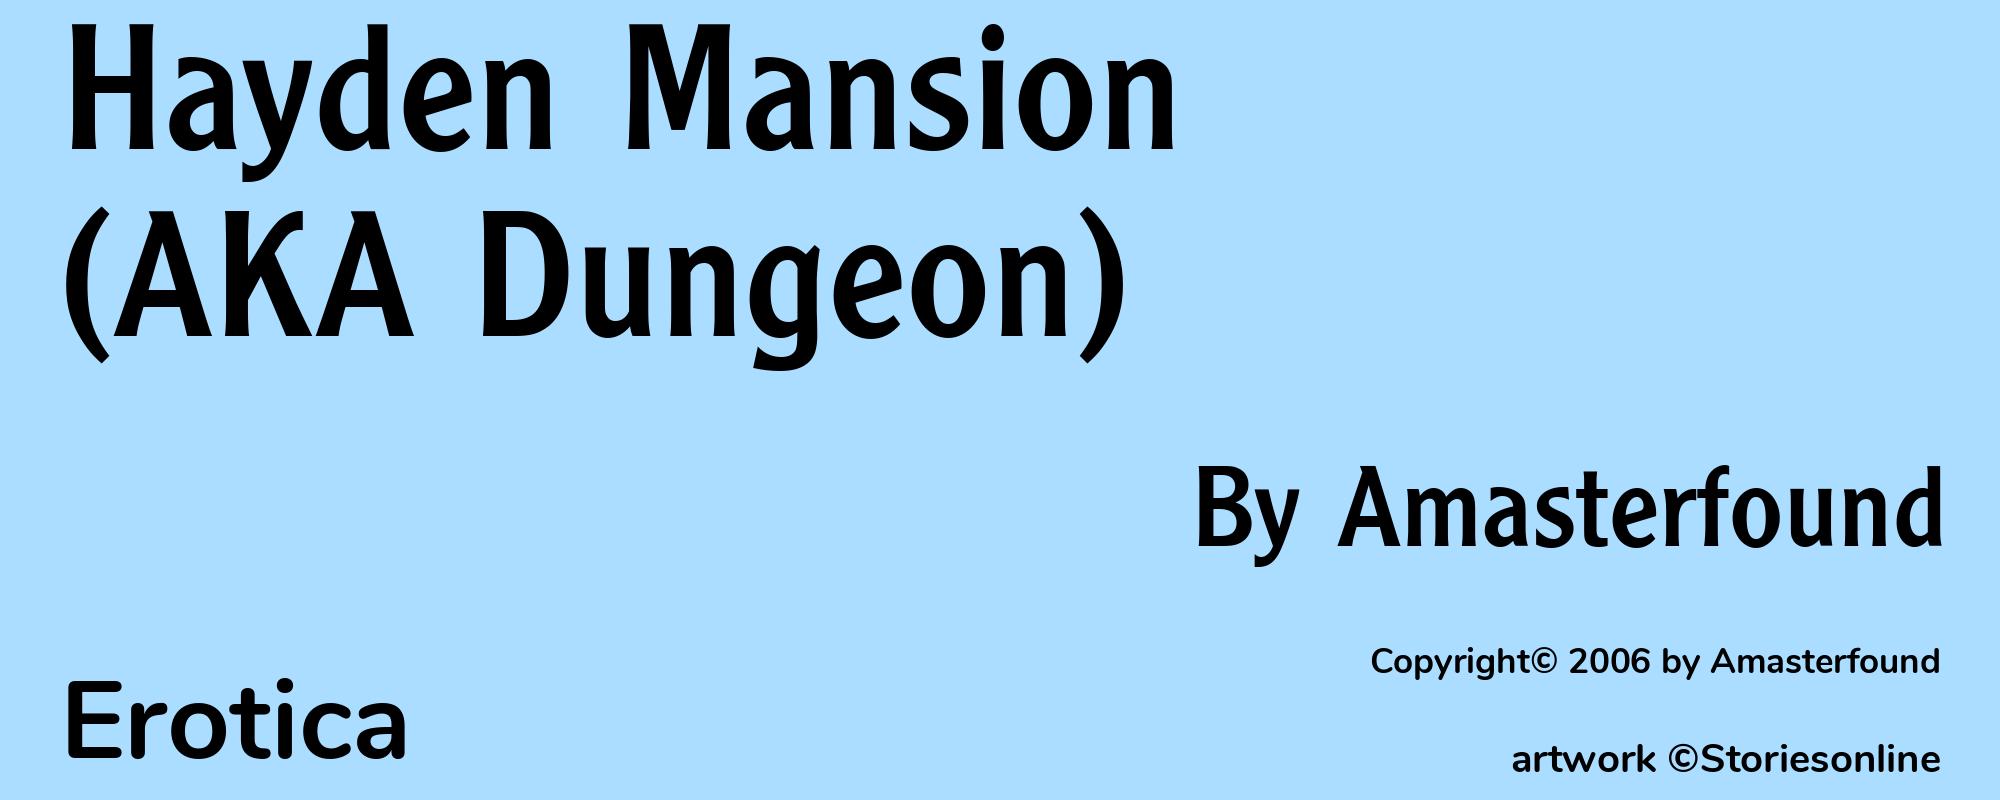 Hayden Mansion (AKA Dungeon) - Cover